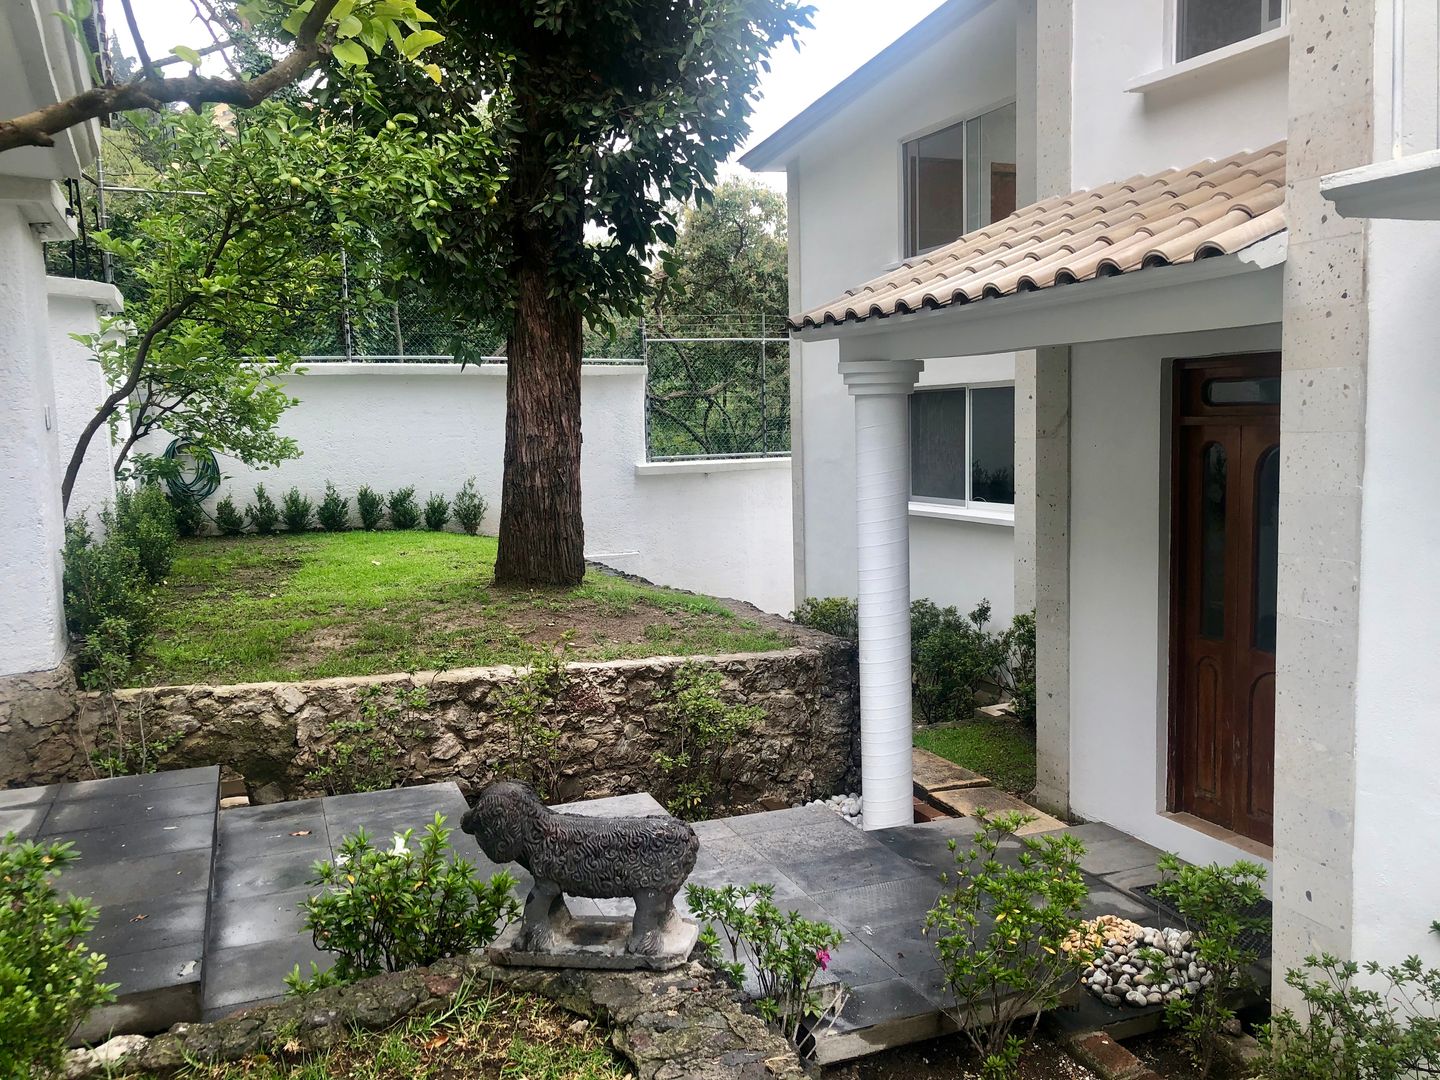 Proyecto y Remodelación de Casa Habitacion en CDMX, Arechiga y Asociados Arechiga y Asociados Single family home Bricks